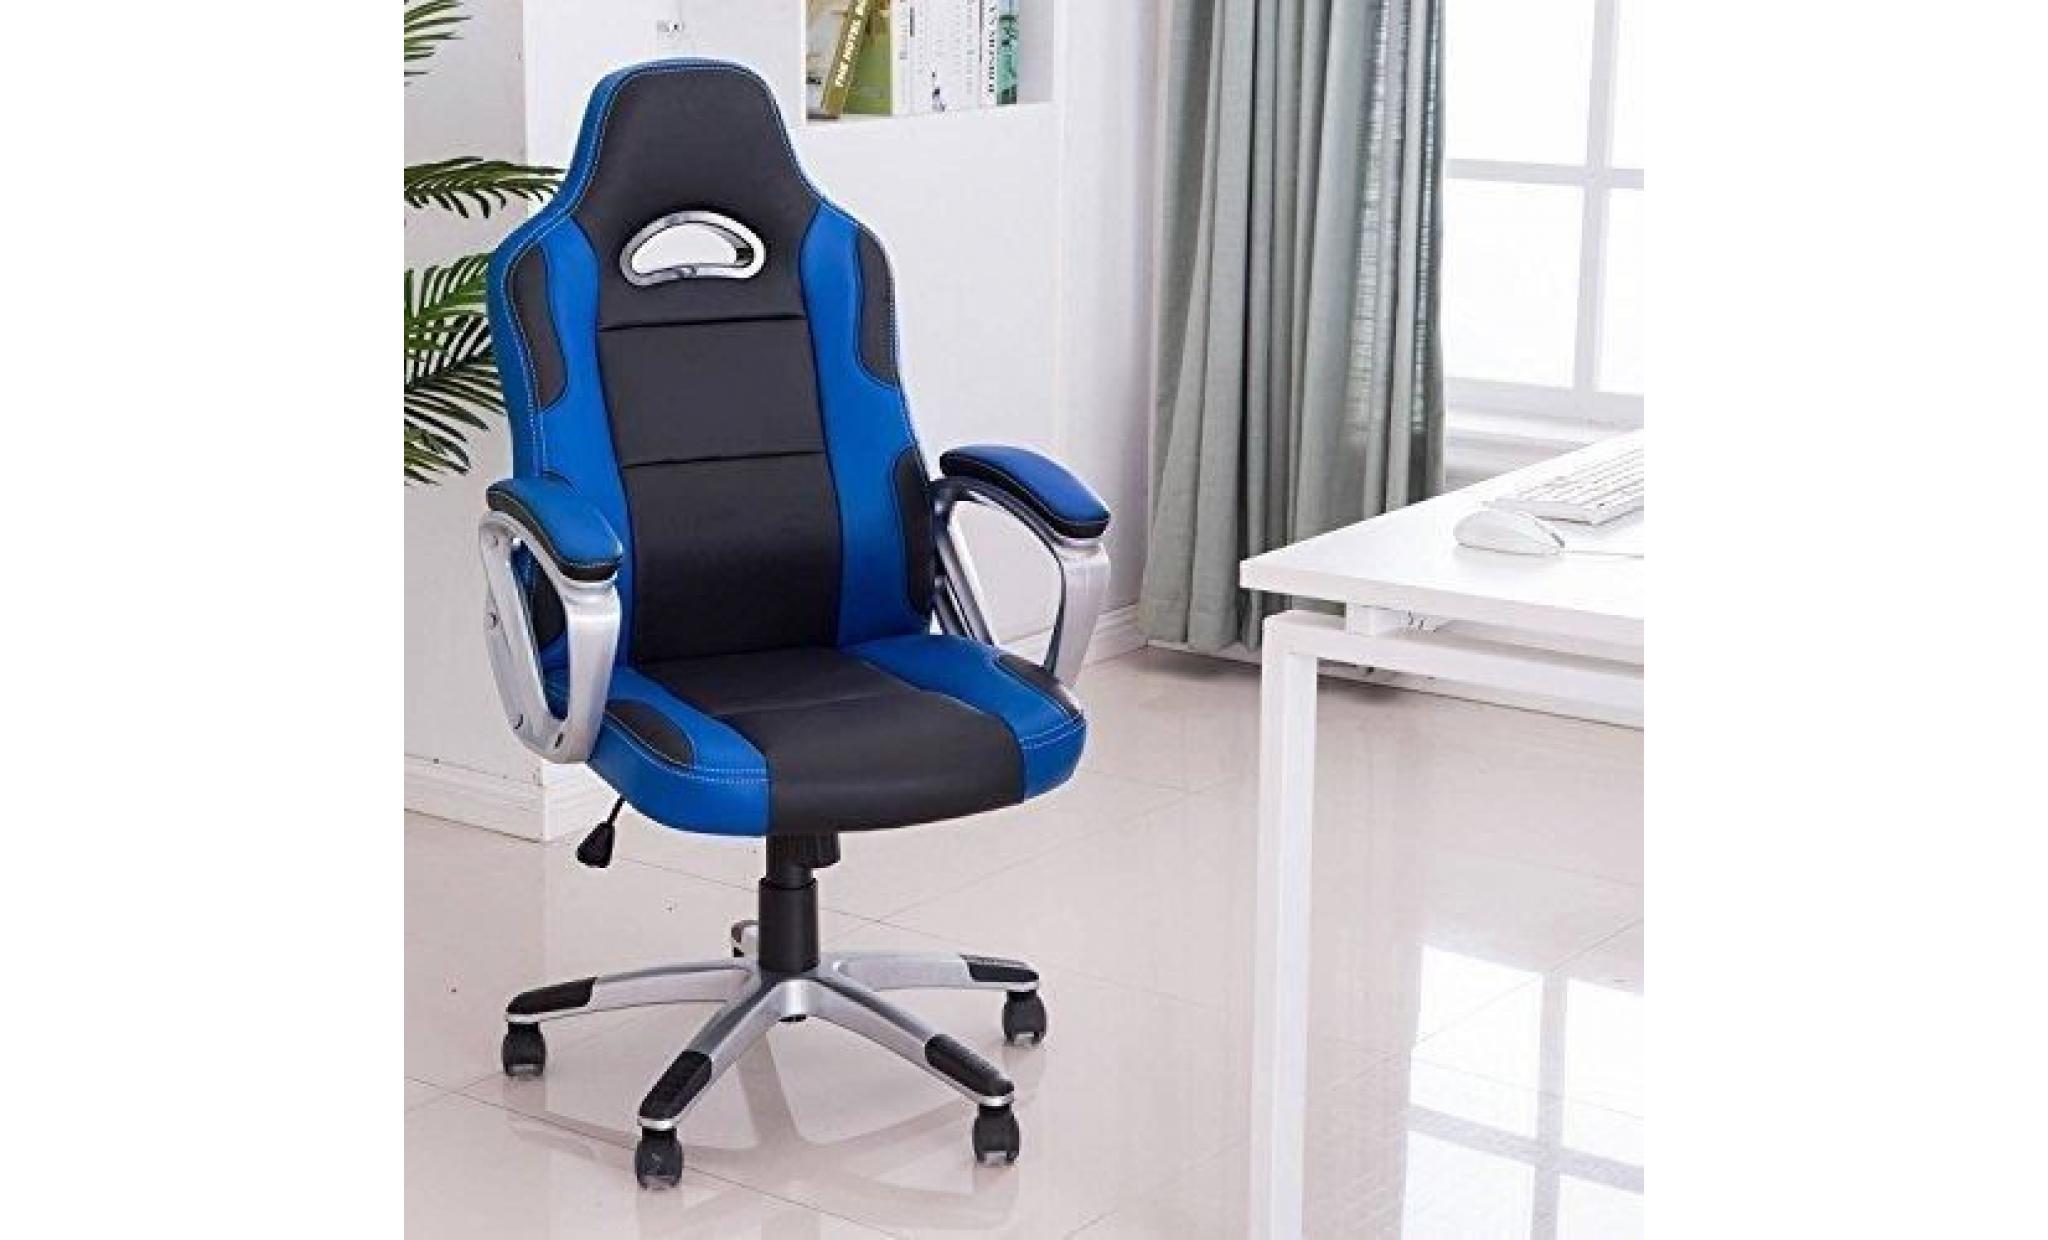 racing chaise de bureau pu   gaming chaise   fauteuil de bureau   hauteur réglable   rouge   intimate wm heat pas cher